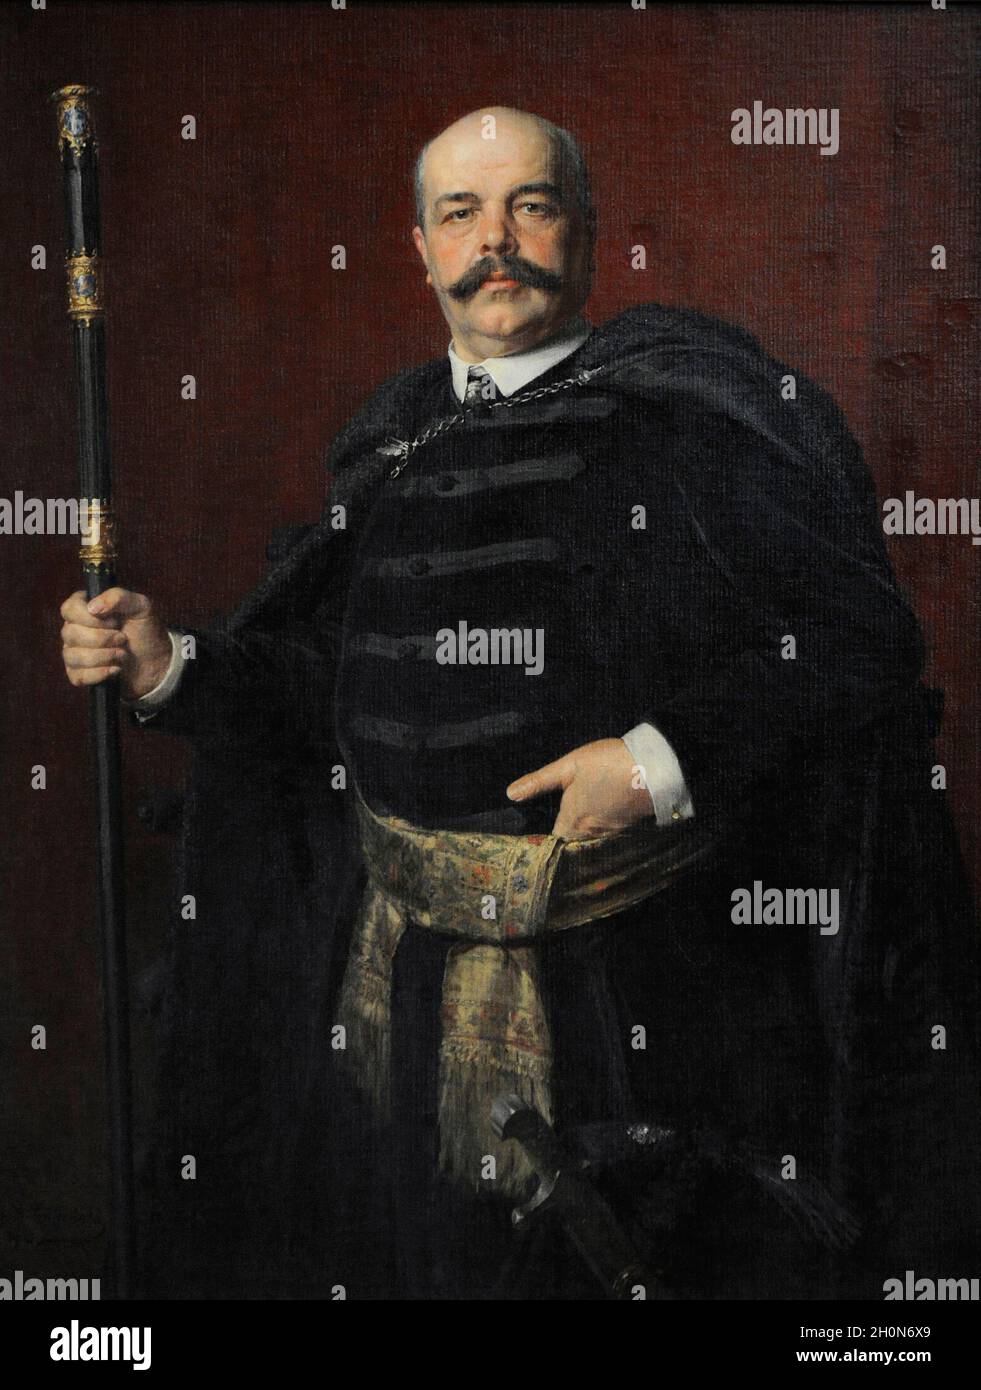 Stanislaw Marcin Badeni (1850-1912). Polnischer Politiker. Porträt von Kazimierz Pochwalski (1855-1940), 1903. Polnische Kunstgalerie aus dem 19. Jahrhundert (Sukiennisch Stockfoto